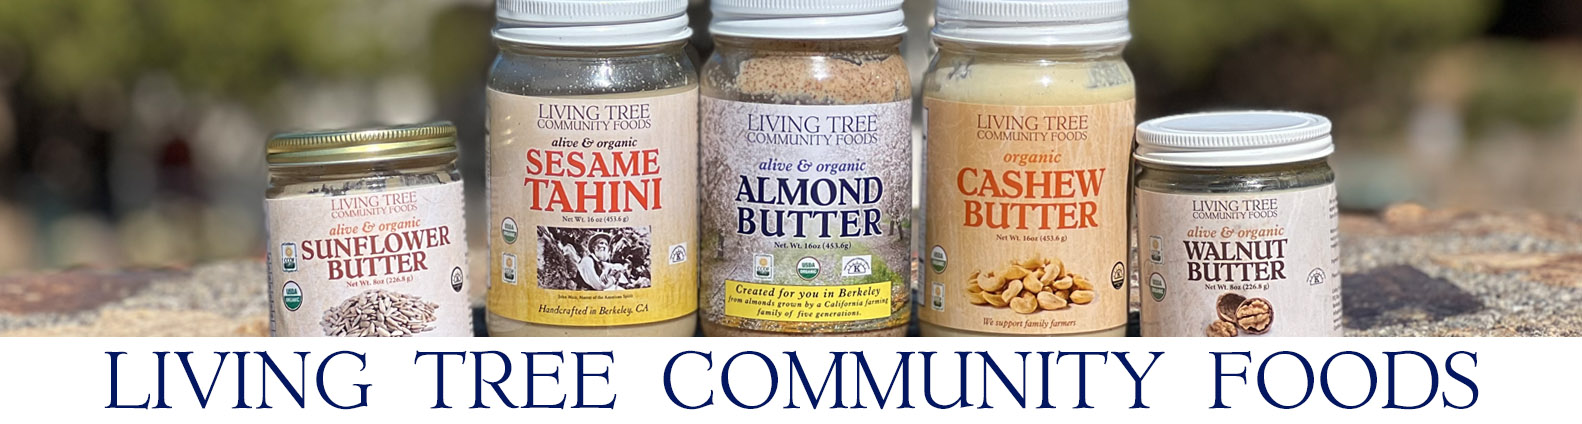 Nut & Seed Butter Jars Newsletter Header